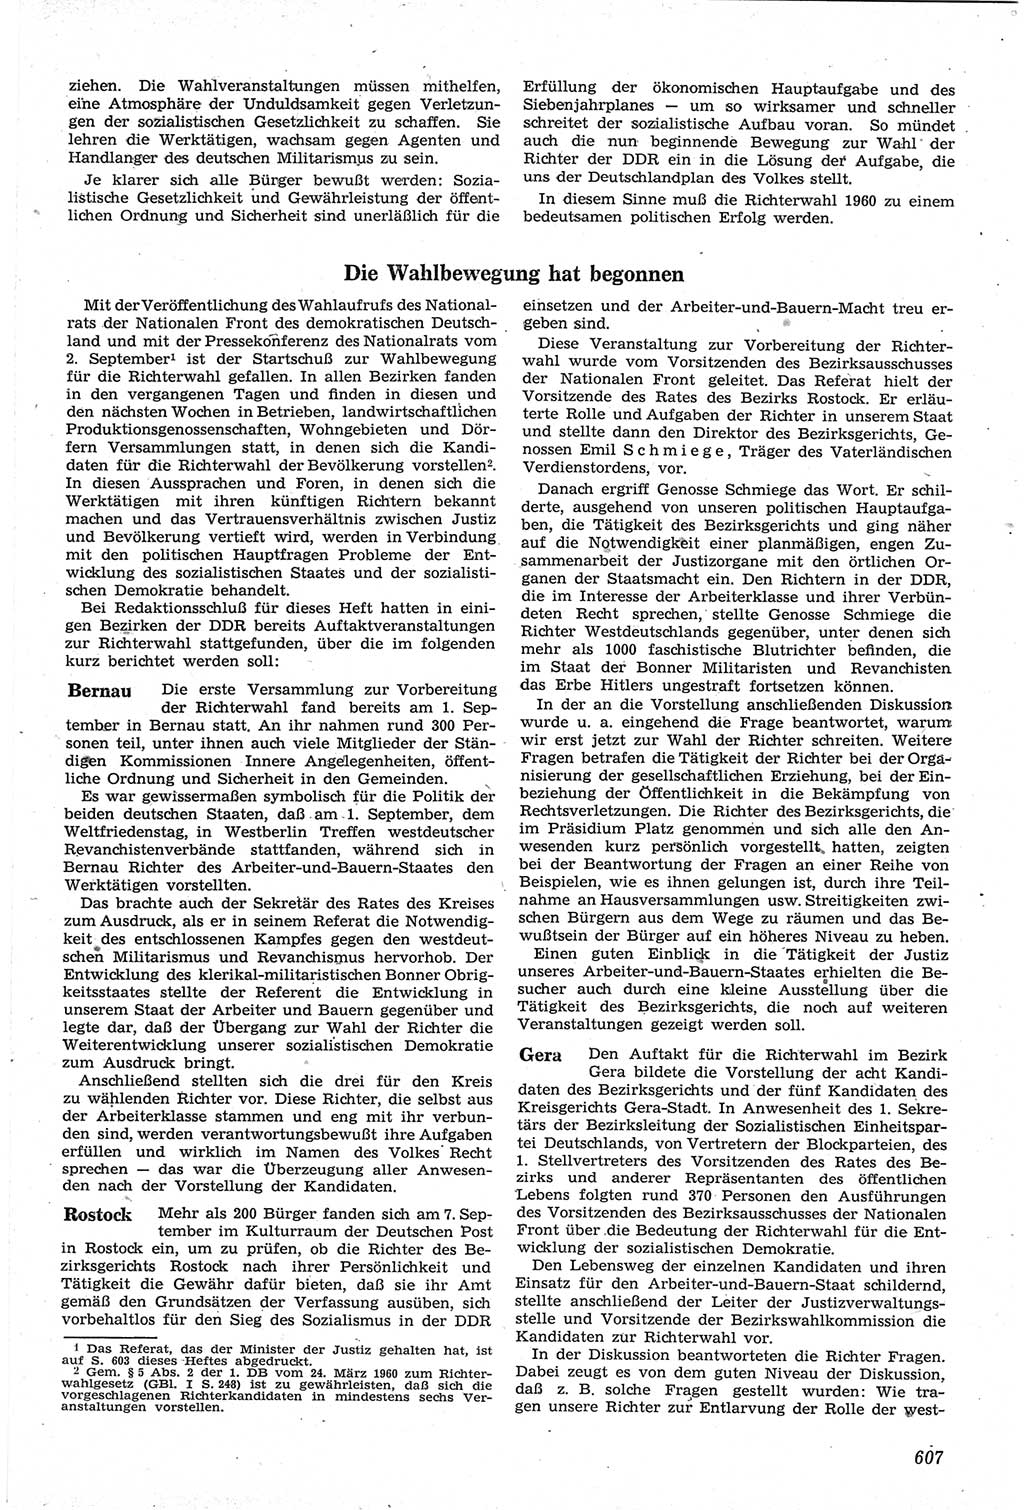 Neue Justiz (NJ), Zeitschrift für Recht und Rechtswissenschaft [Deutsche Demokratische Republik (DDR)], 14. Jahrgang 1960, Seite 607 (NJ DDR 1960, S. 607)